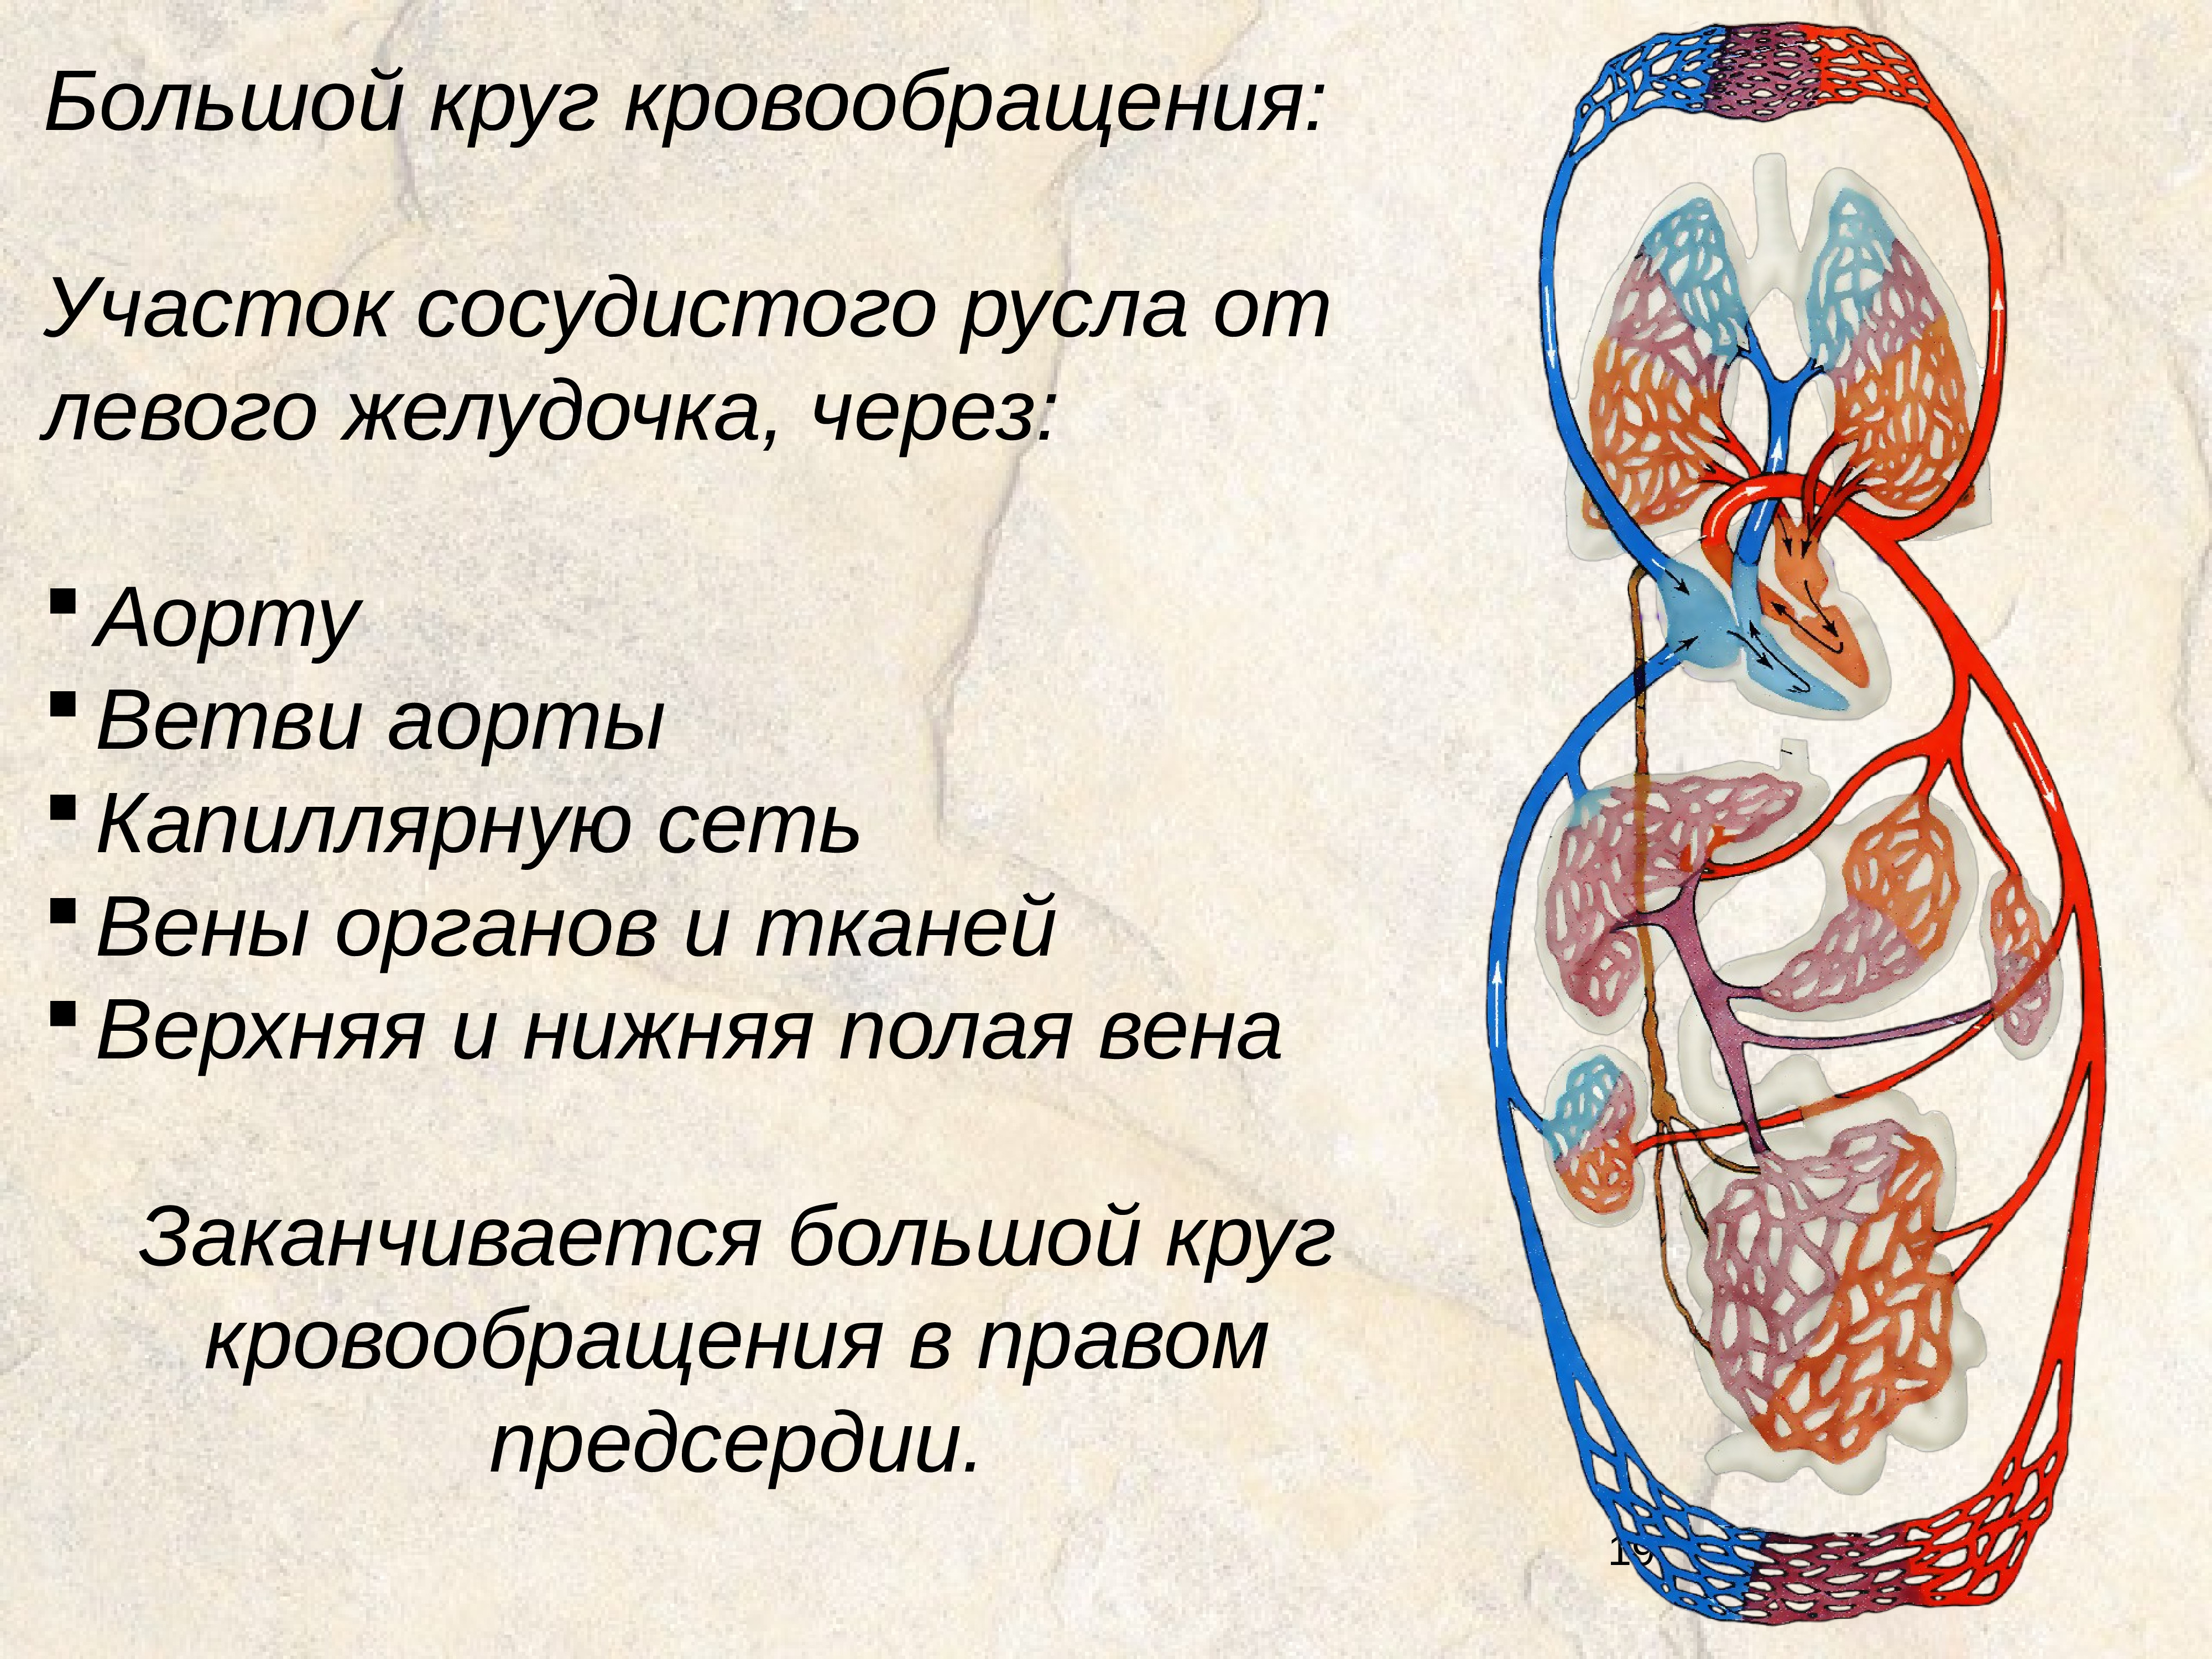 Принципы кровообращения. Малый круг кровообращения анатомия человека. Система большого круга кровообращения. Схема большого круга кровообращения у человека. Круги кровообращения большой круг малый круг.